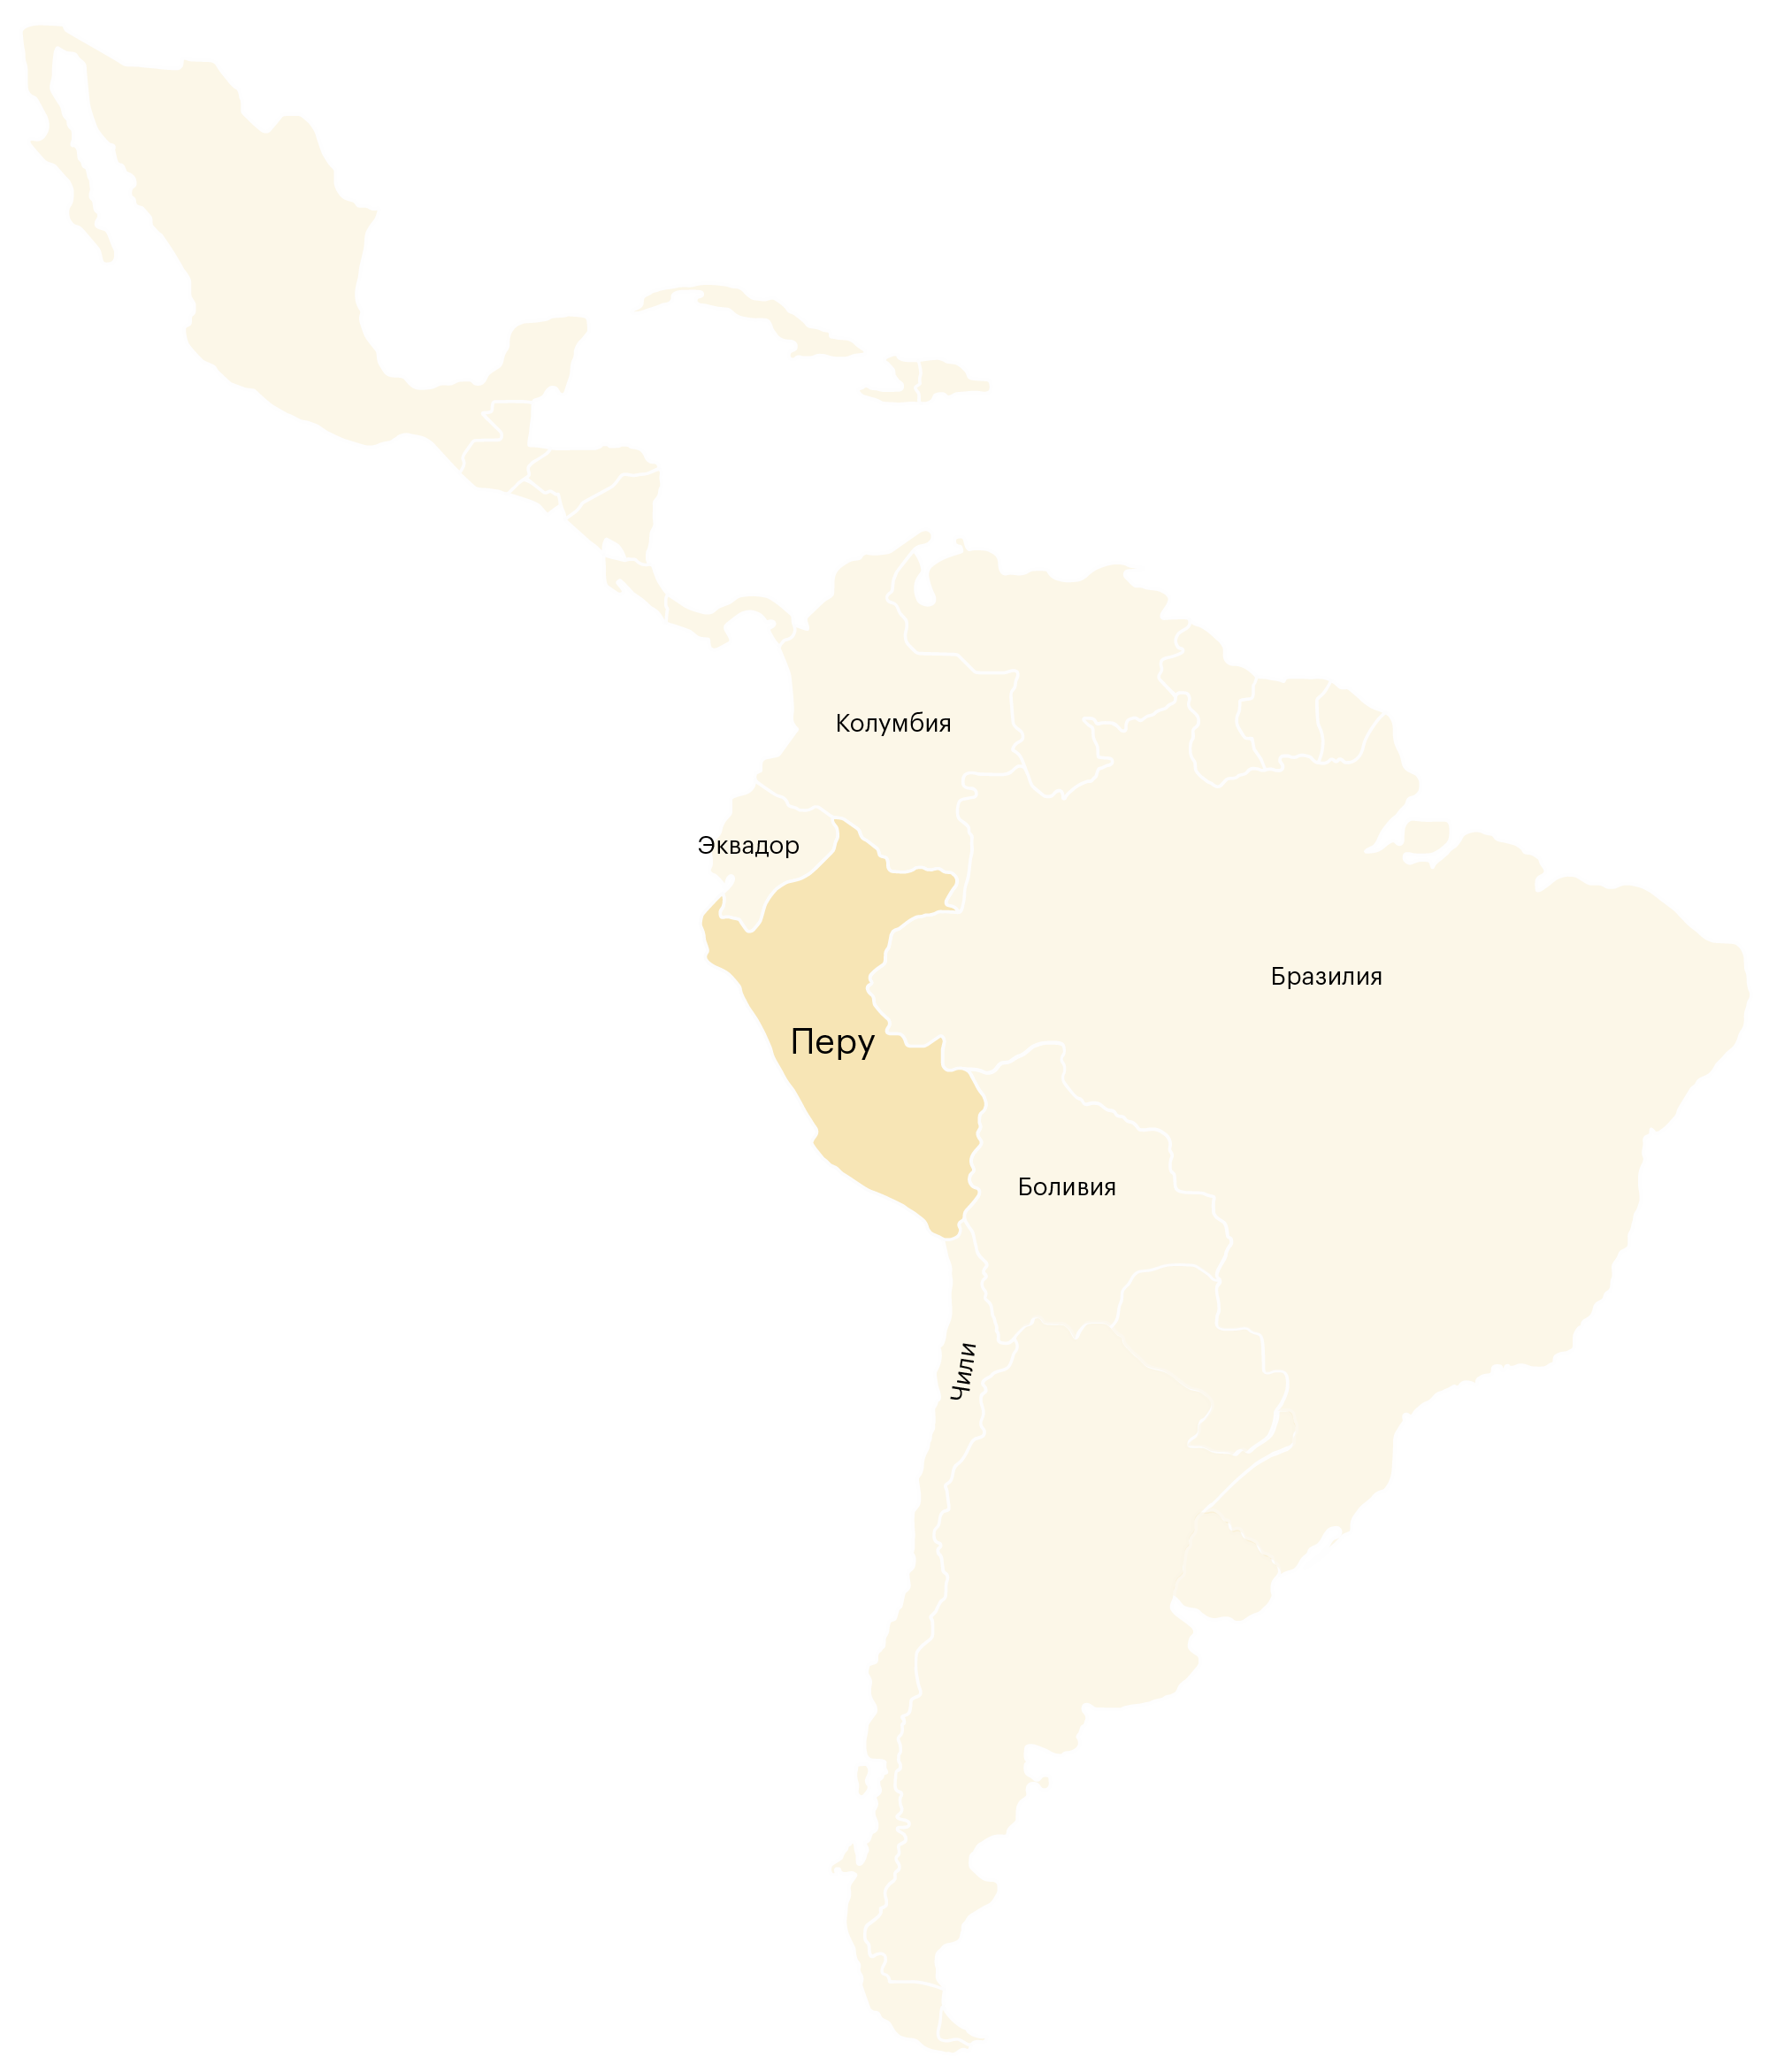 Перу — страна в Южной Америке. Она находится в восточной части материка и граничит с Бразилией, Чили, Эквадором, Колумбией и Боливией